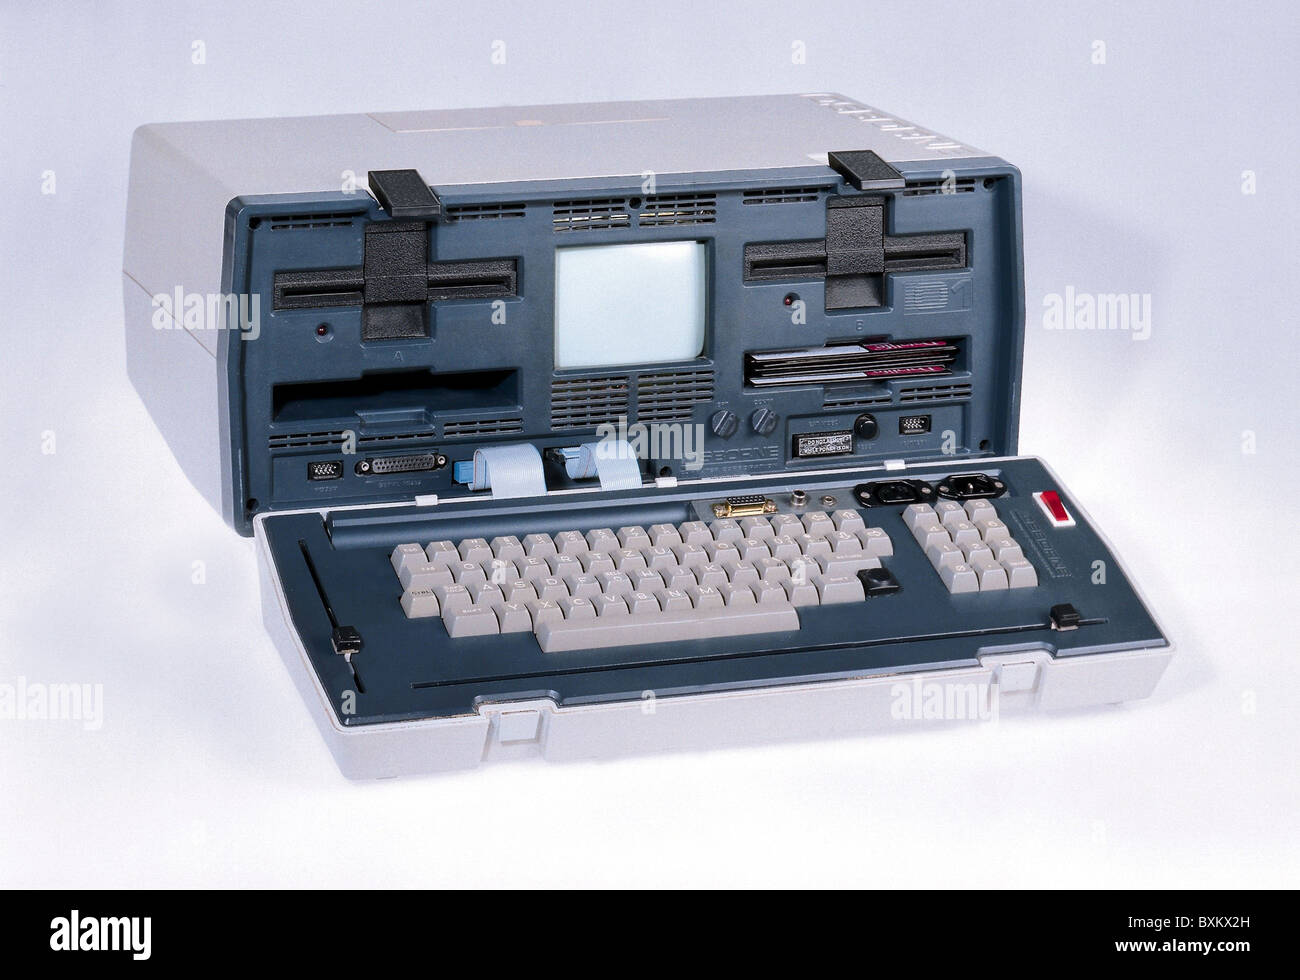 Informatique / électronique, ordinateur, ordinateur portable, Osborne-1, premier  ordinateur portable, Etats-Unis, 1981, droits  supplémentaires-Clearences-non disponible Photo Stock - Alamy